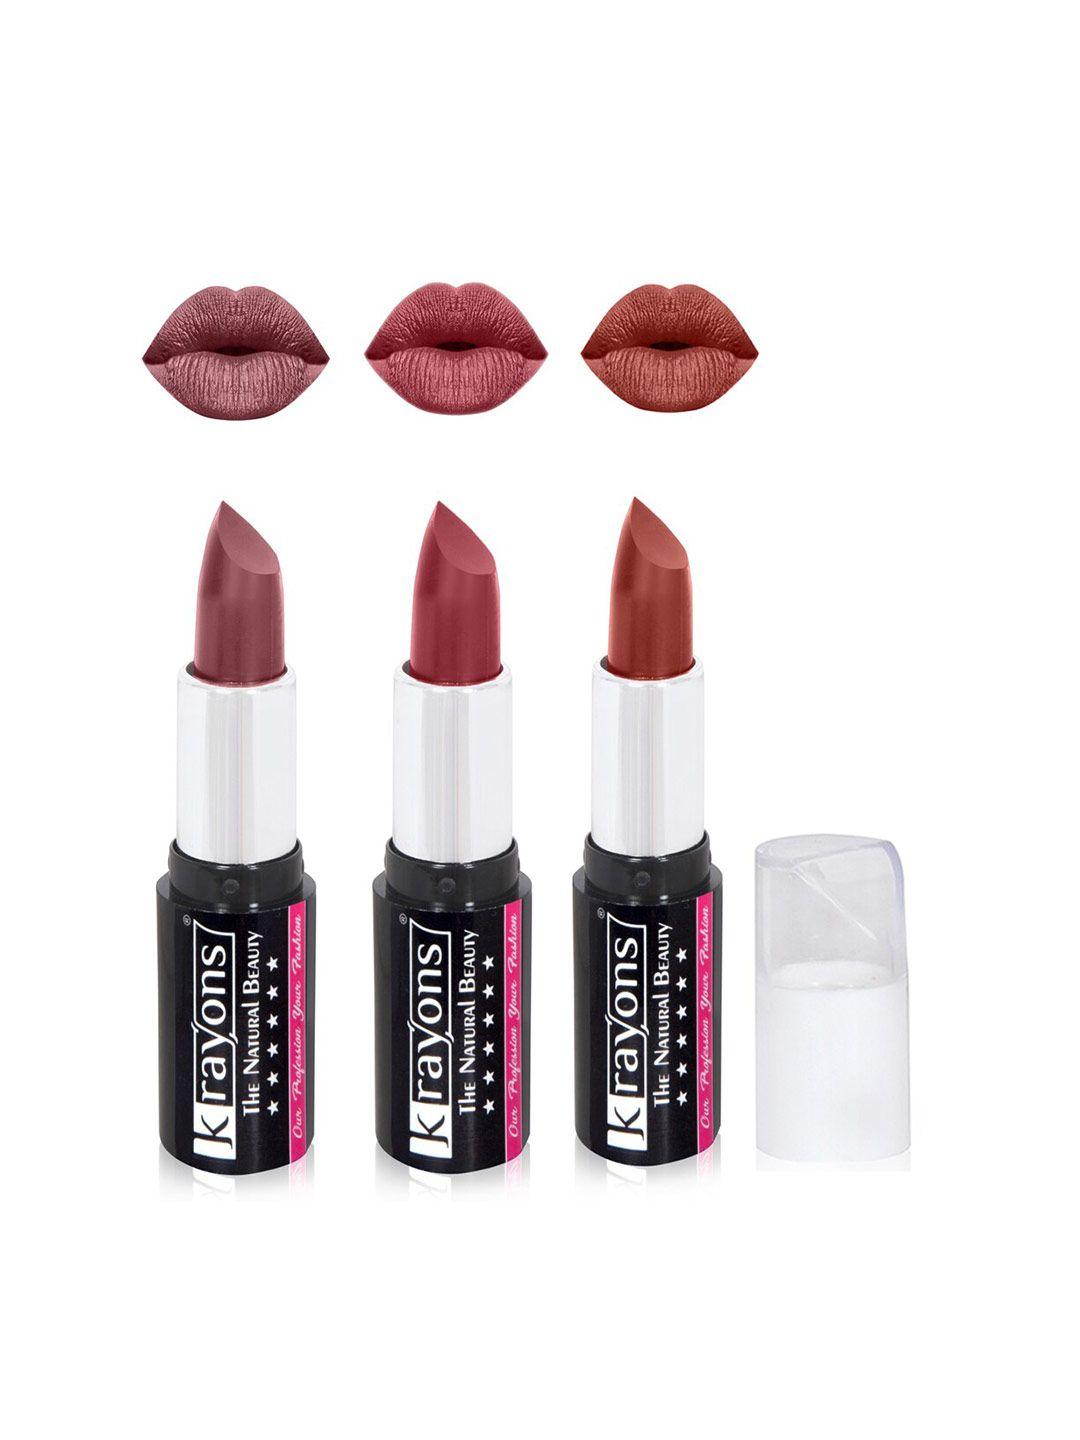 krayons the natural beauty set of 3 moisturizing matte lipsticks - 4 g each